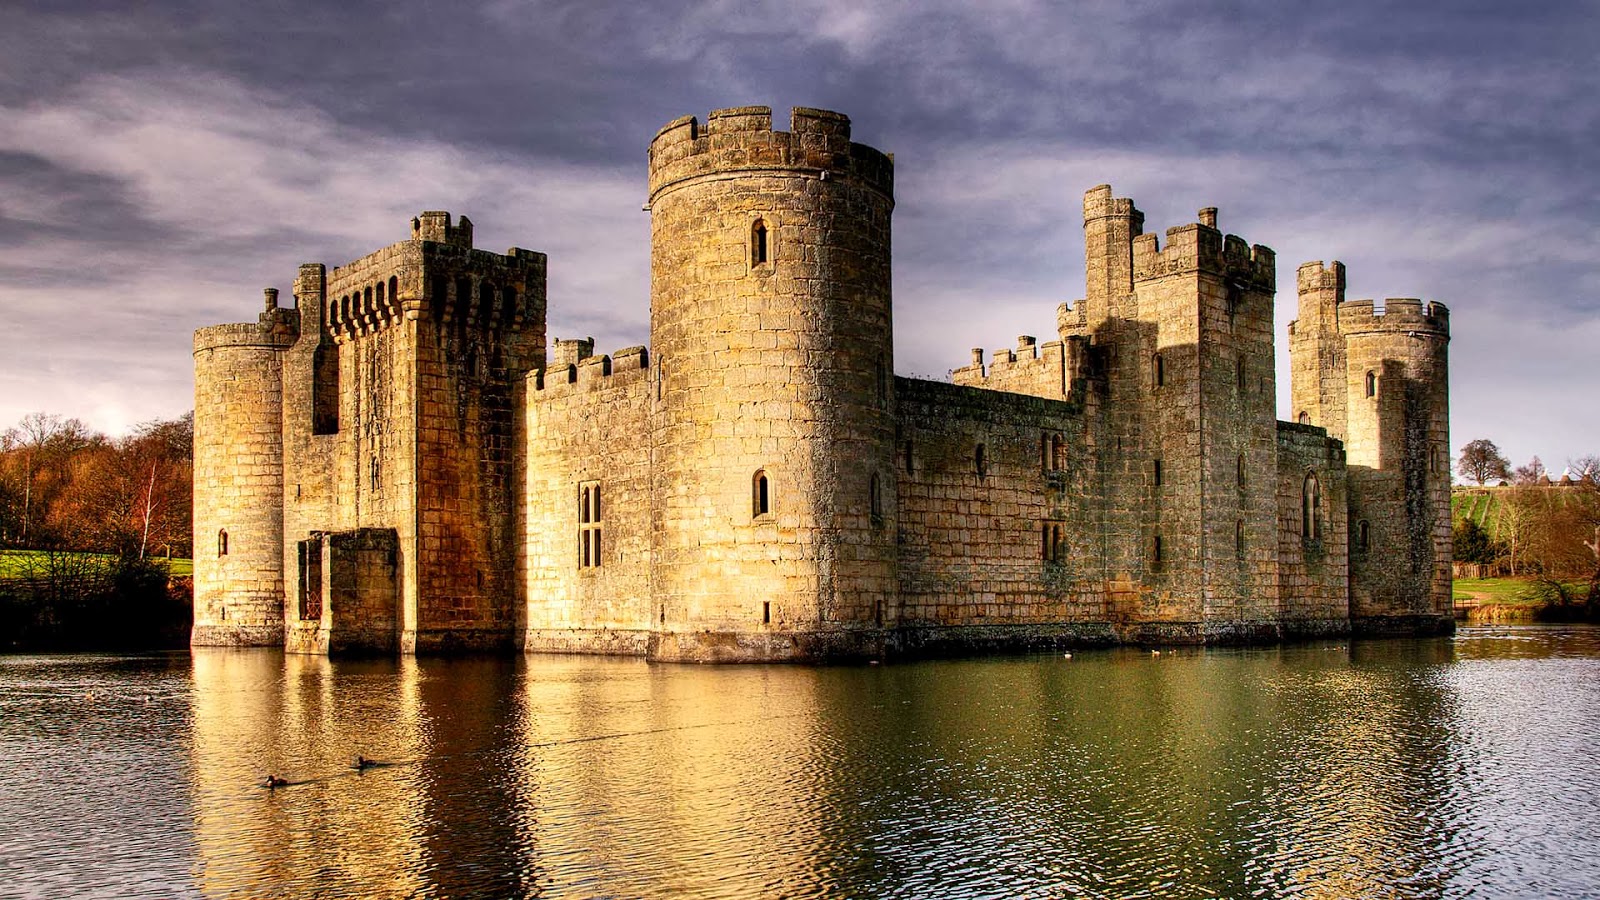 castle wallpaper hd,waterway,moat,castle,water castle,fortification